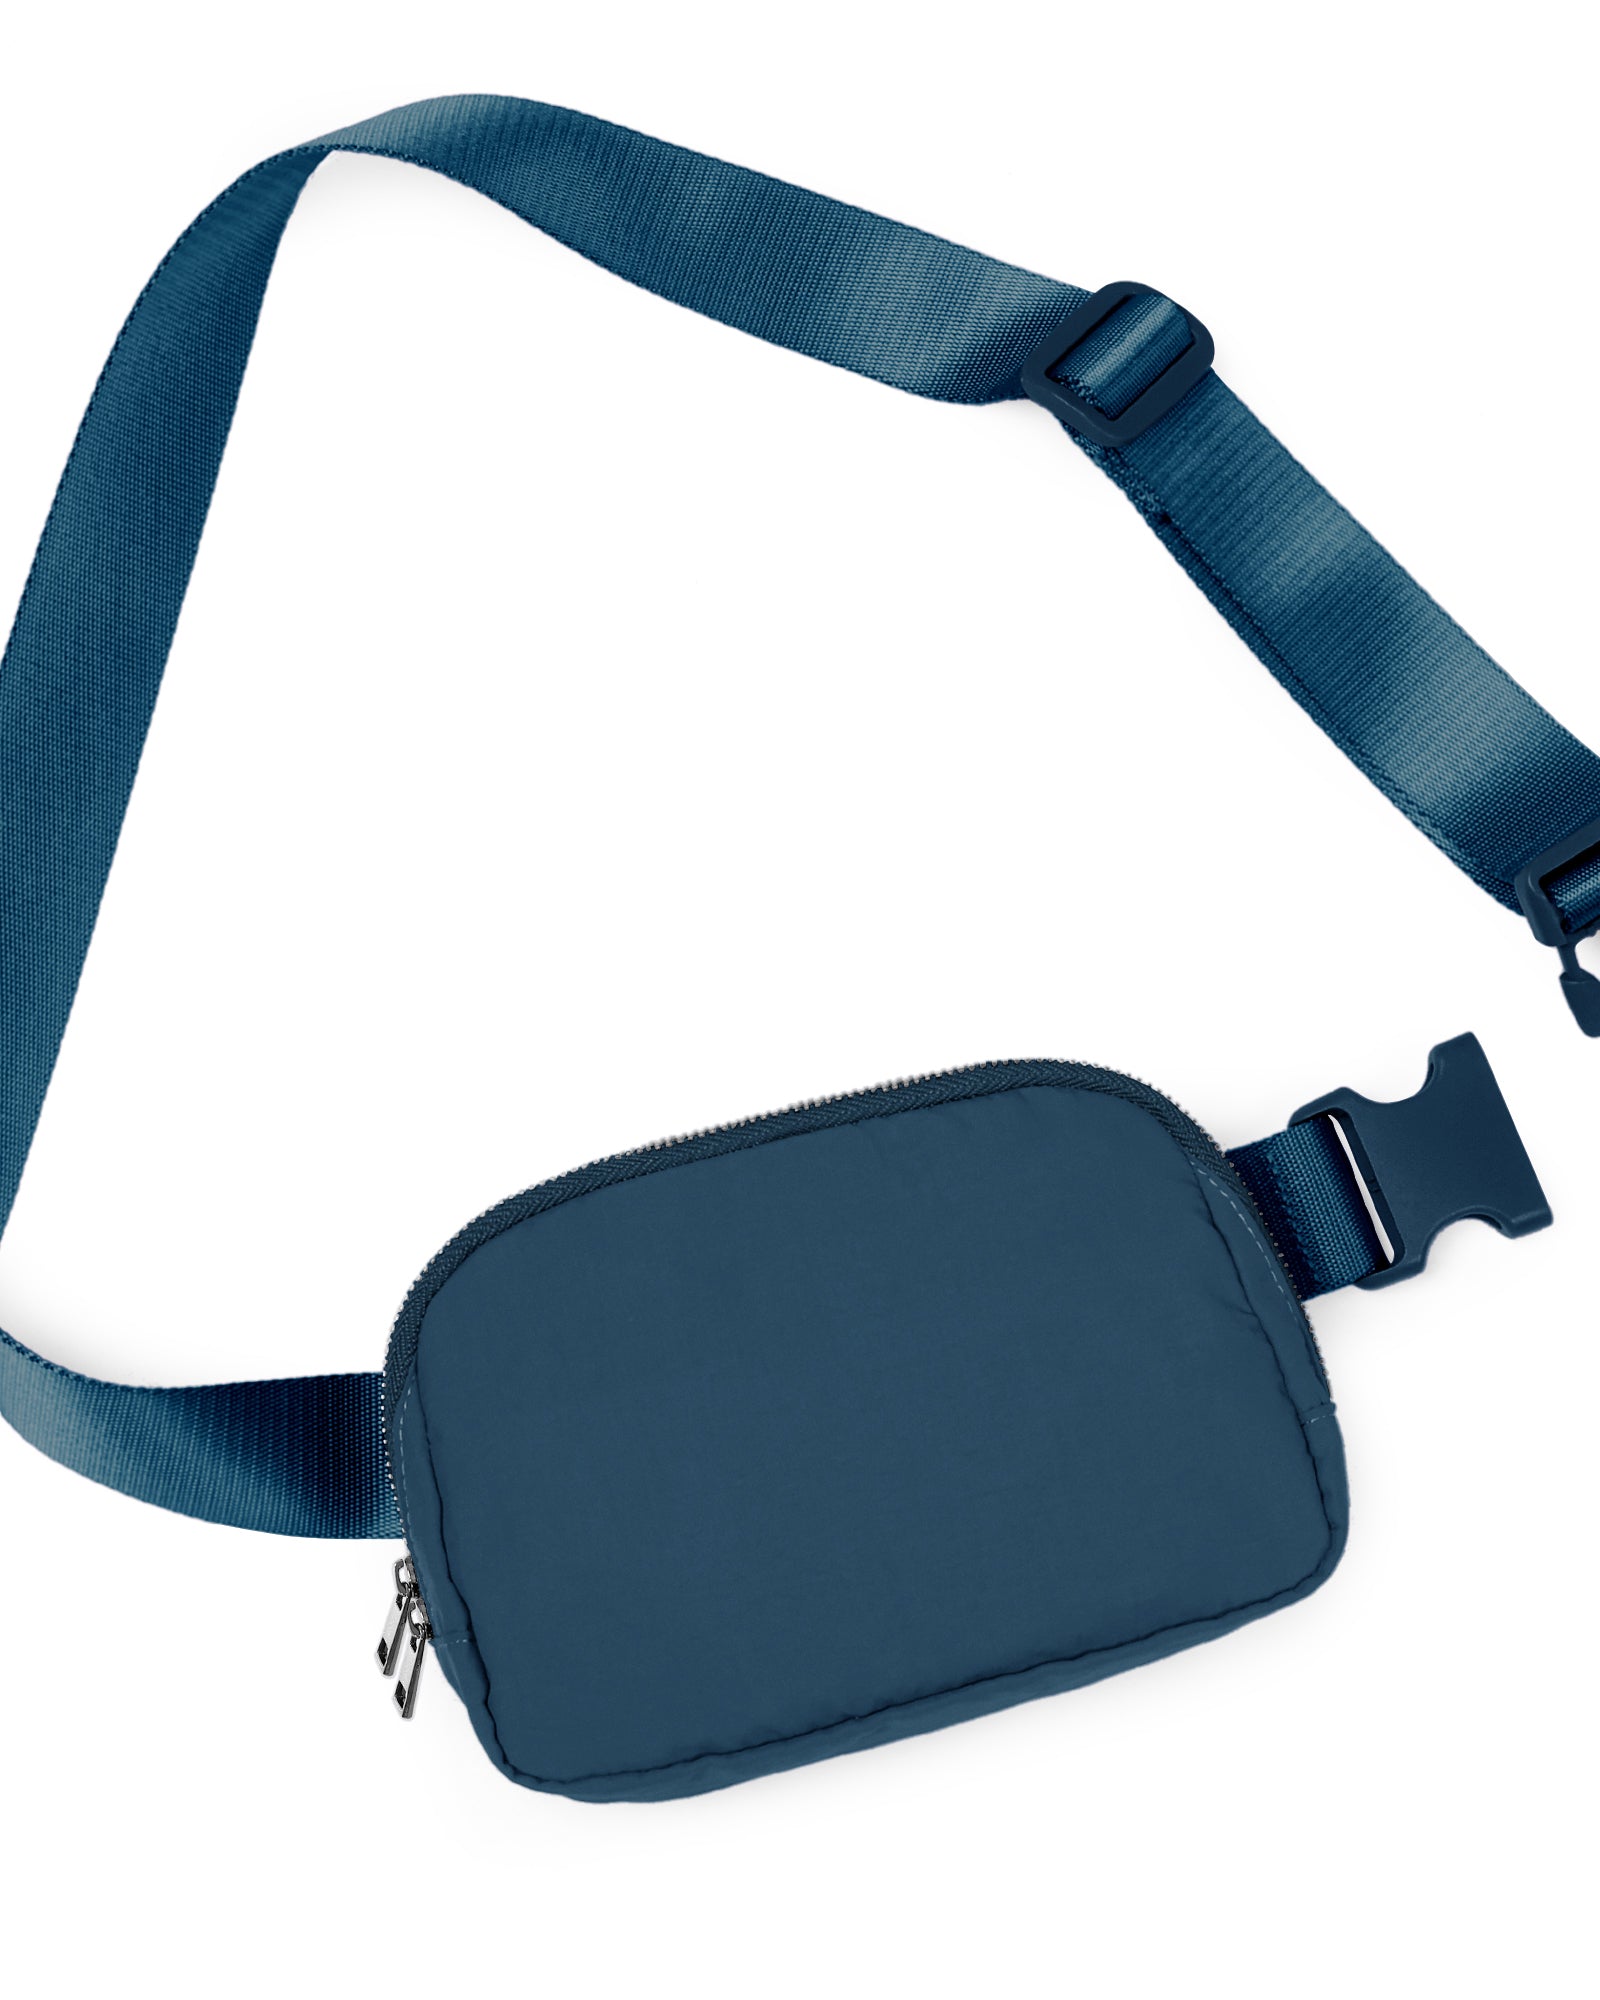 Unisex Two-Way Zip Mini Belt Bag Navy 8" x 2" x 5.5" - ododos